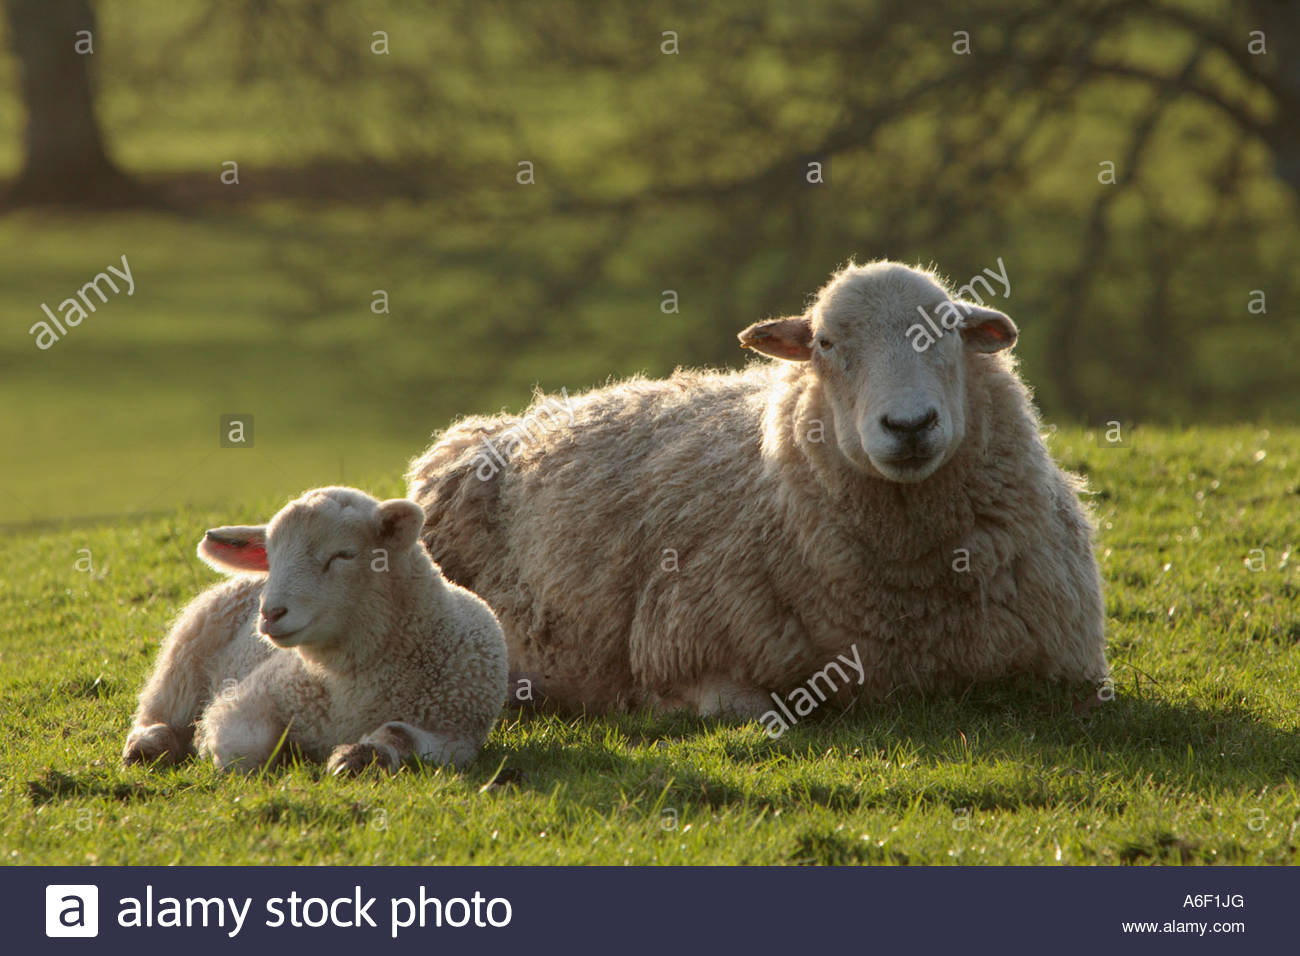 Sheep and Lamb lying down